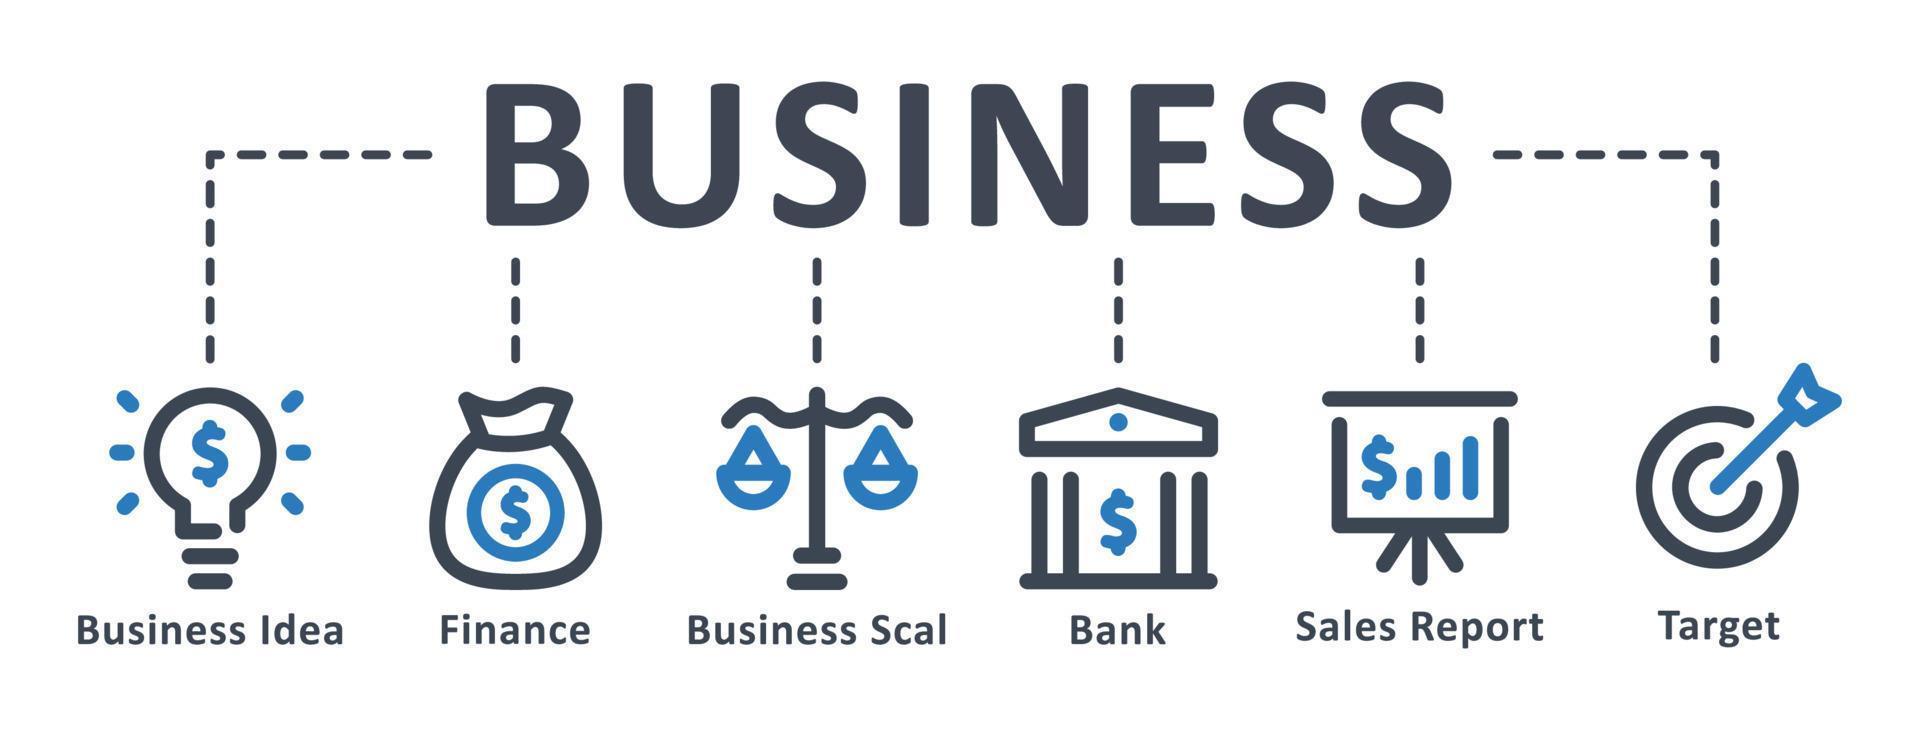 icona di affari - illustrazione vettoriale. affari, idea, finanza, investimento, obiettivo, banca, infografica, modello, presentazione, concetto, banner, pittogramma, set di icone, icone. vettore